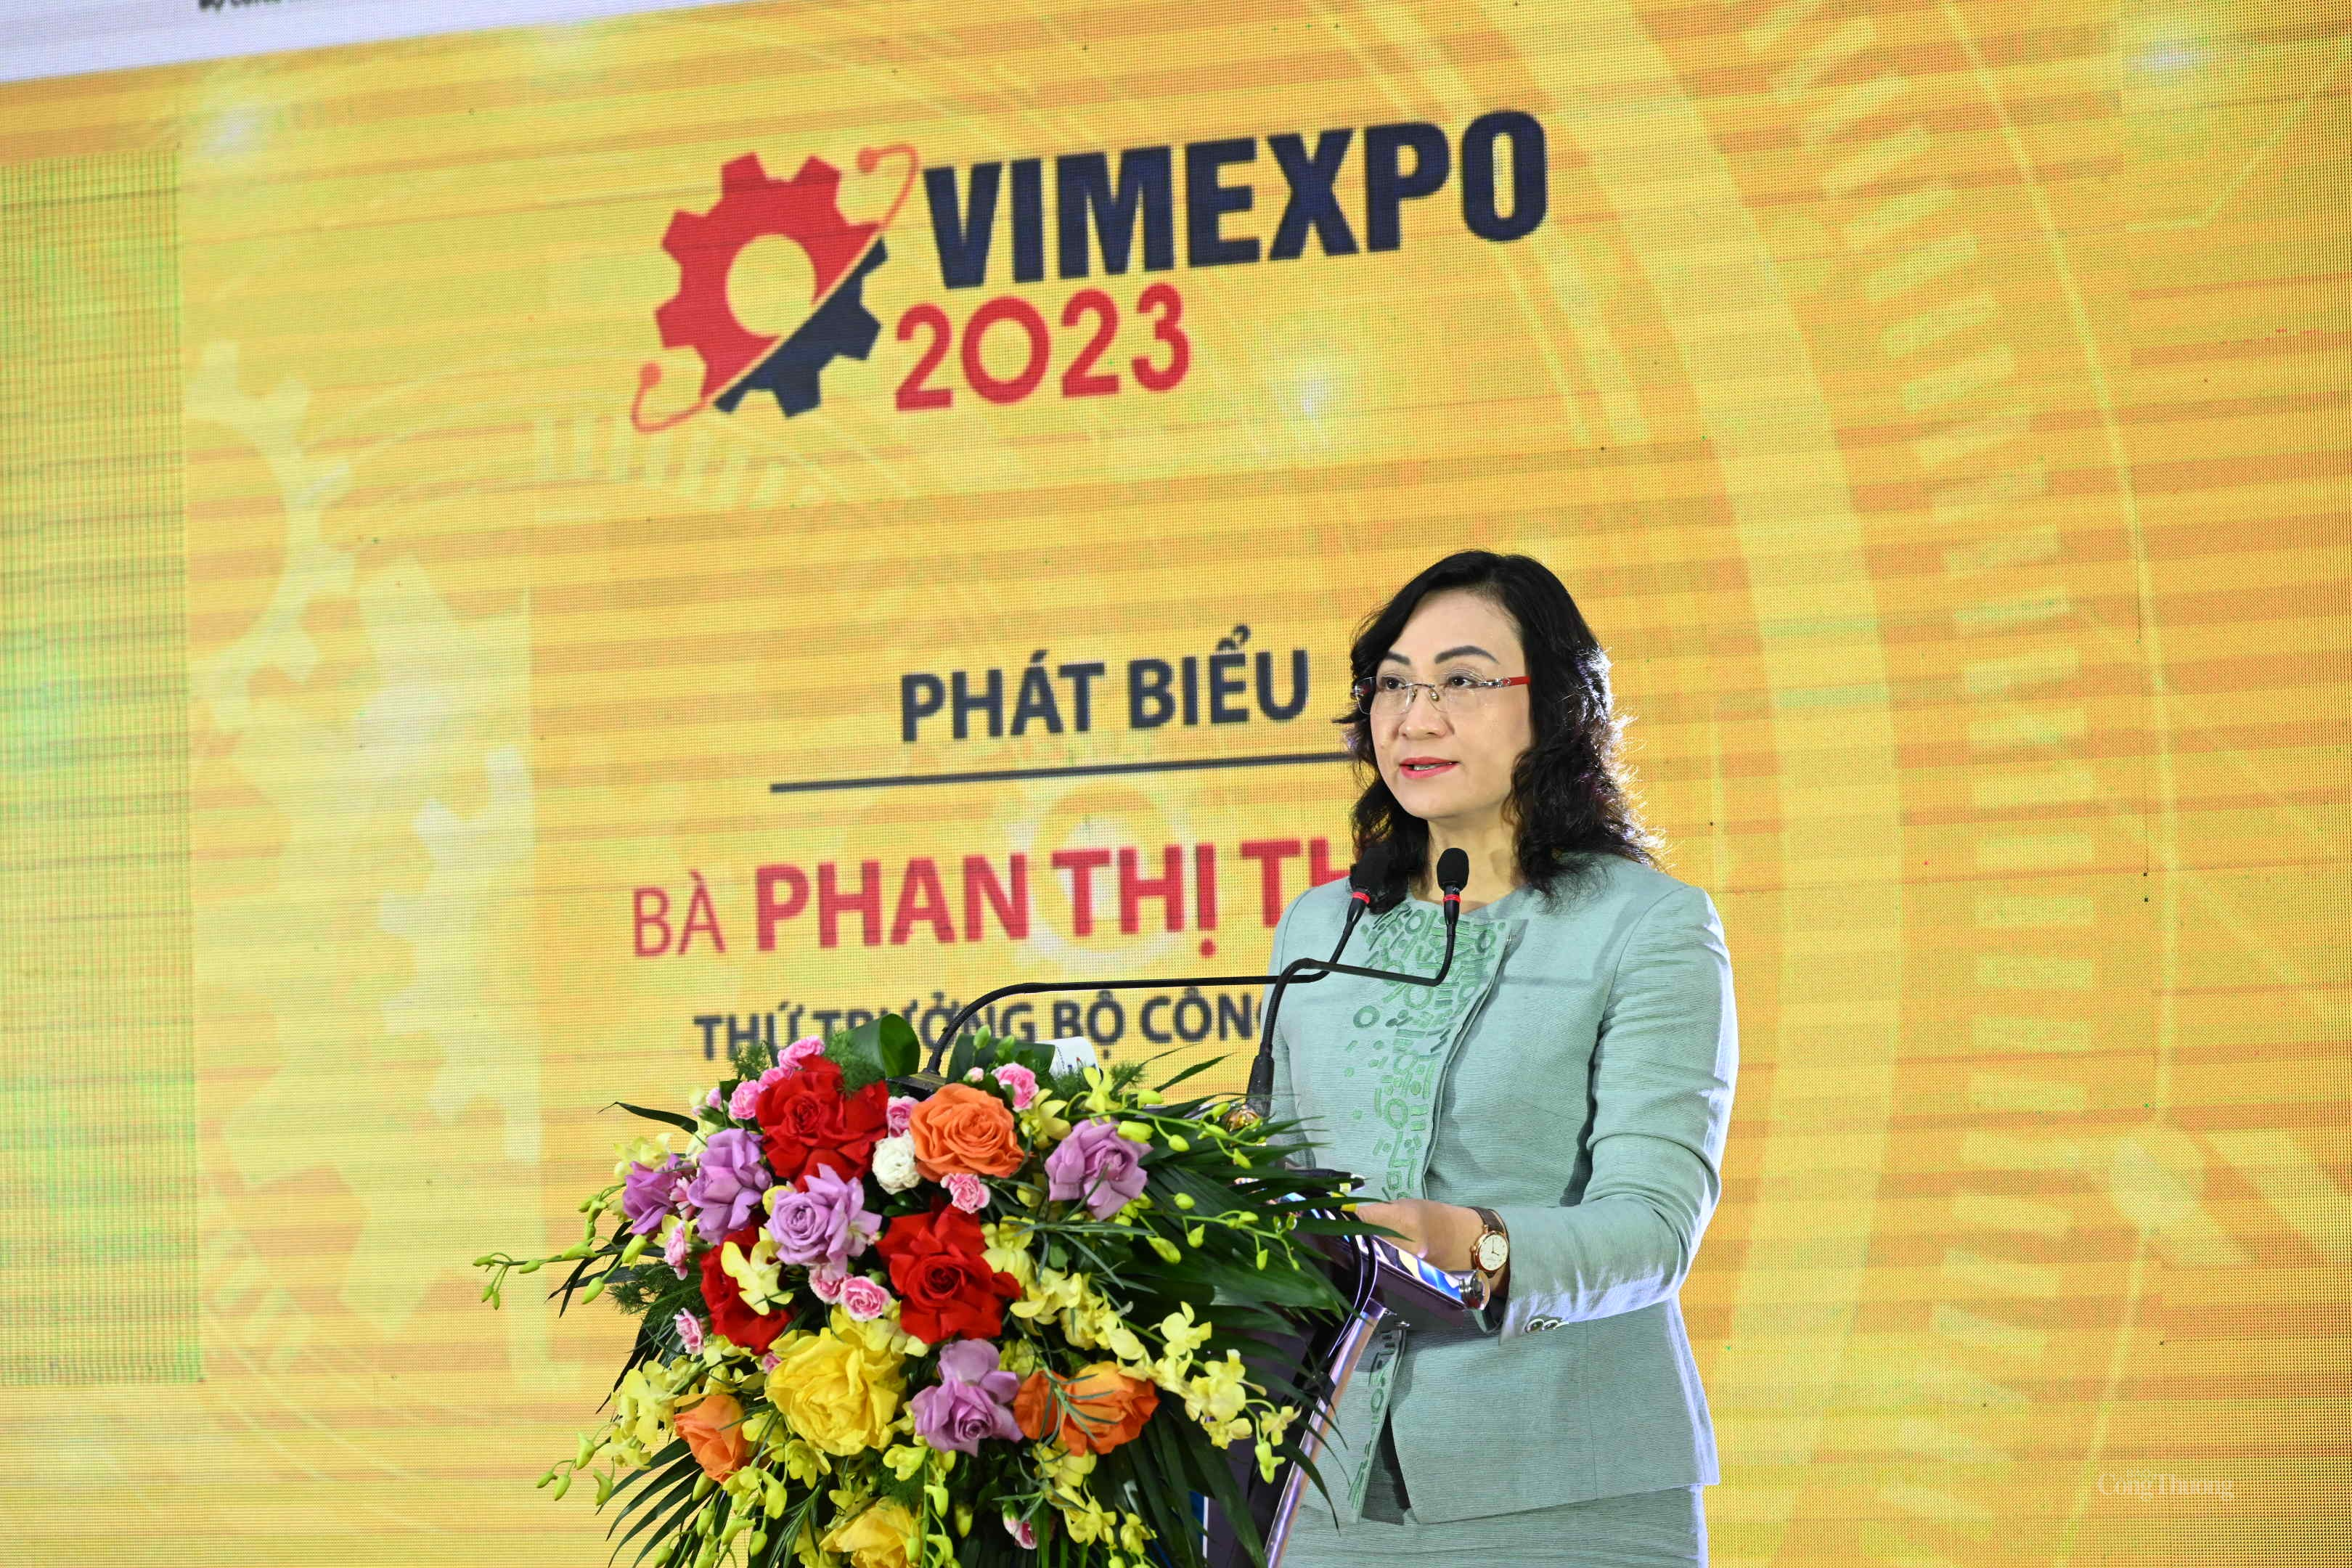 VIMEXPO 2023: Kết nối để phát triển ngành công nghiệp hỗ trợ và chế biến chế tạo Việt Nam